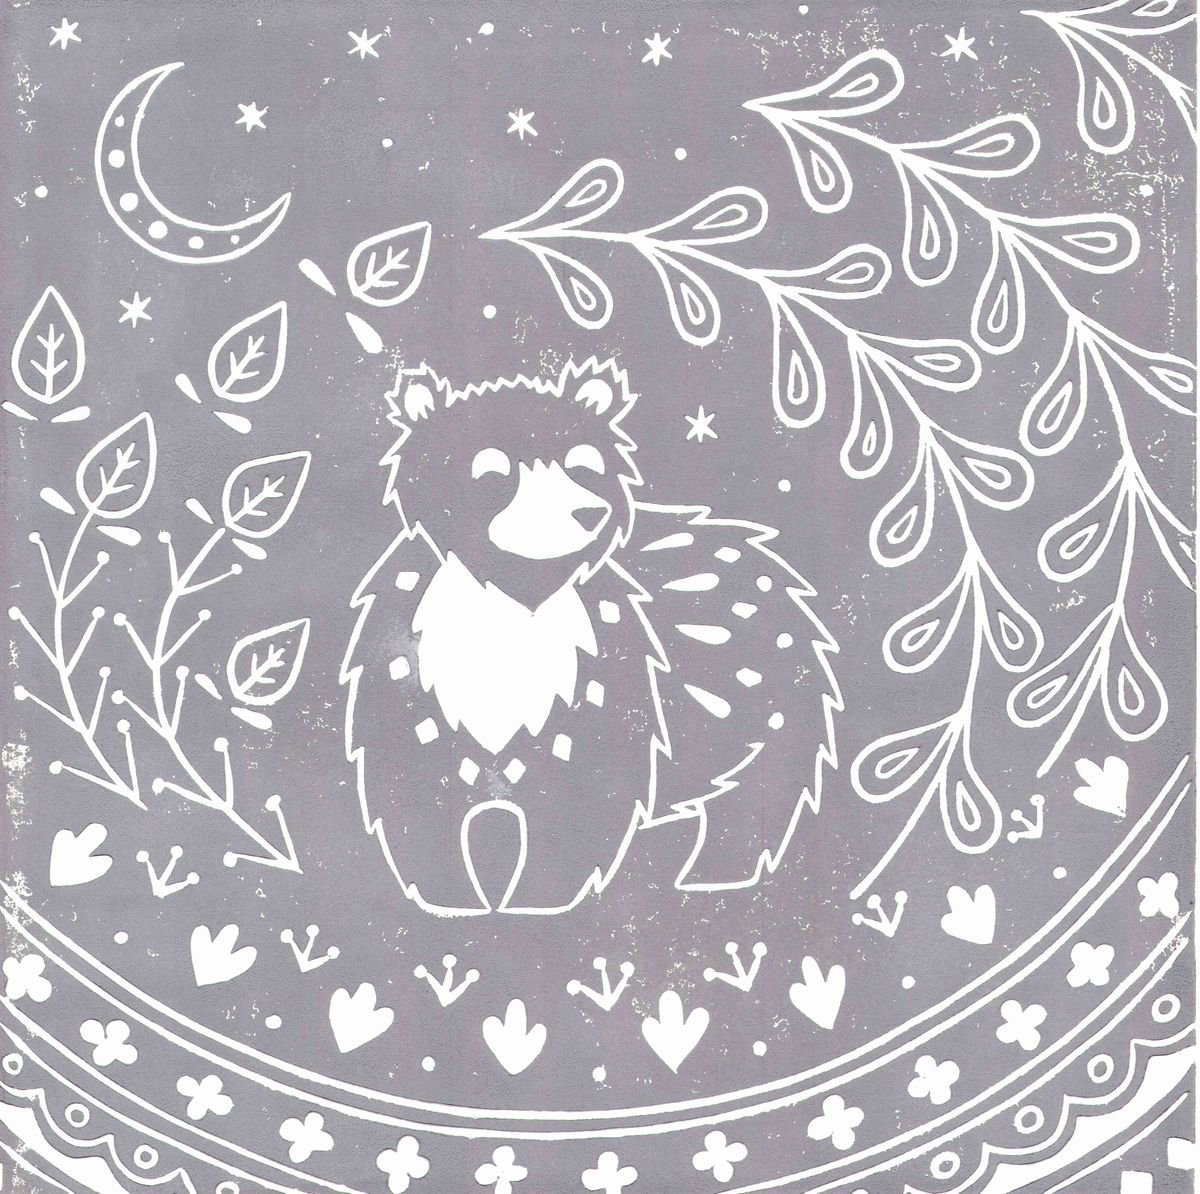 Leon Bear in grey, limited edition scandinavian folk art, linocut print by Katie Farrell